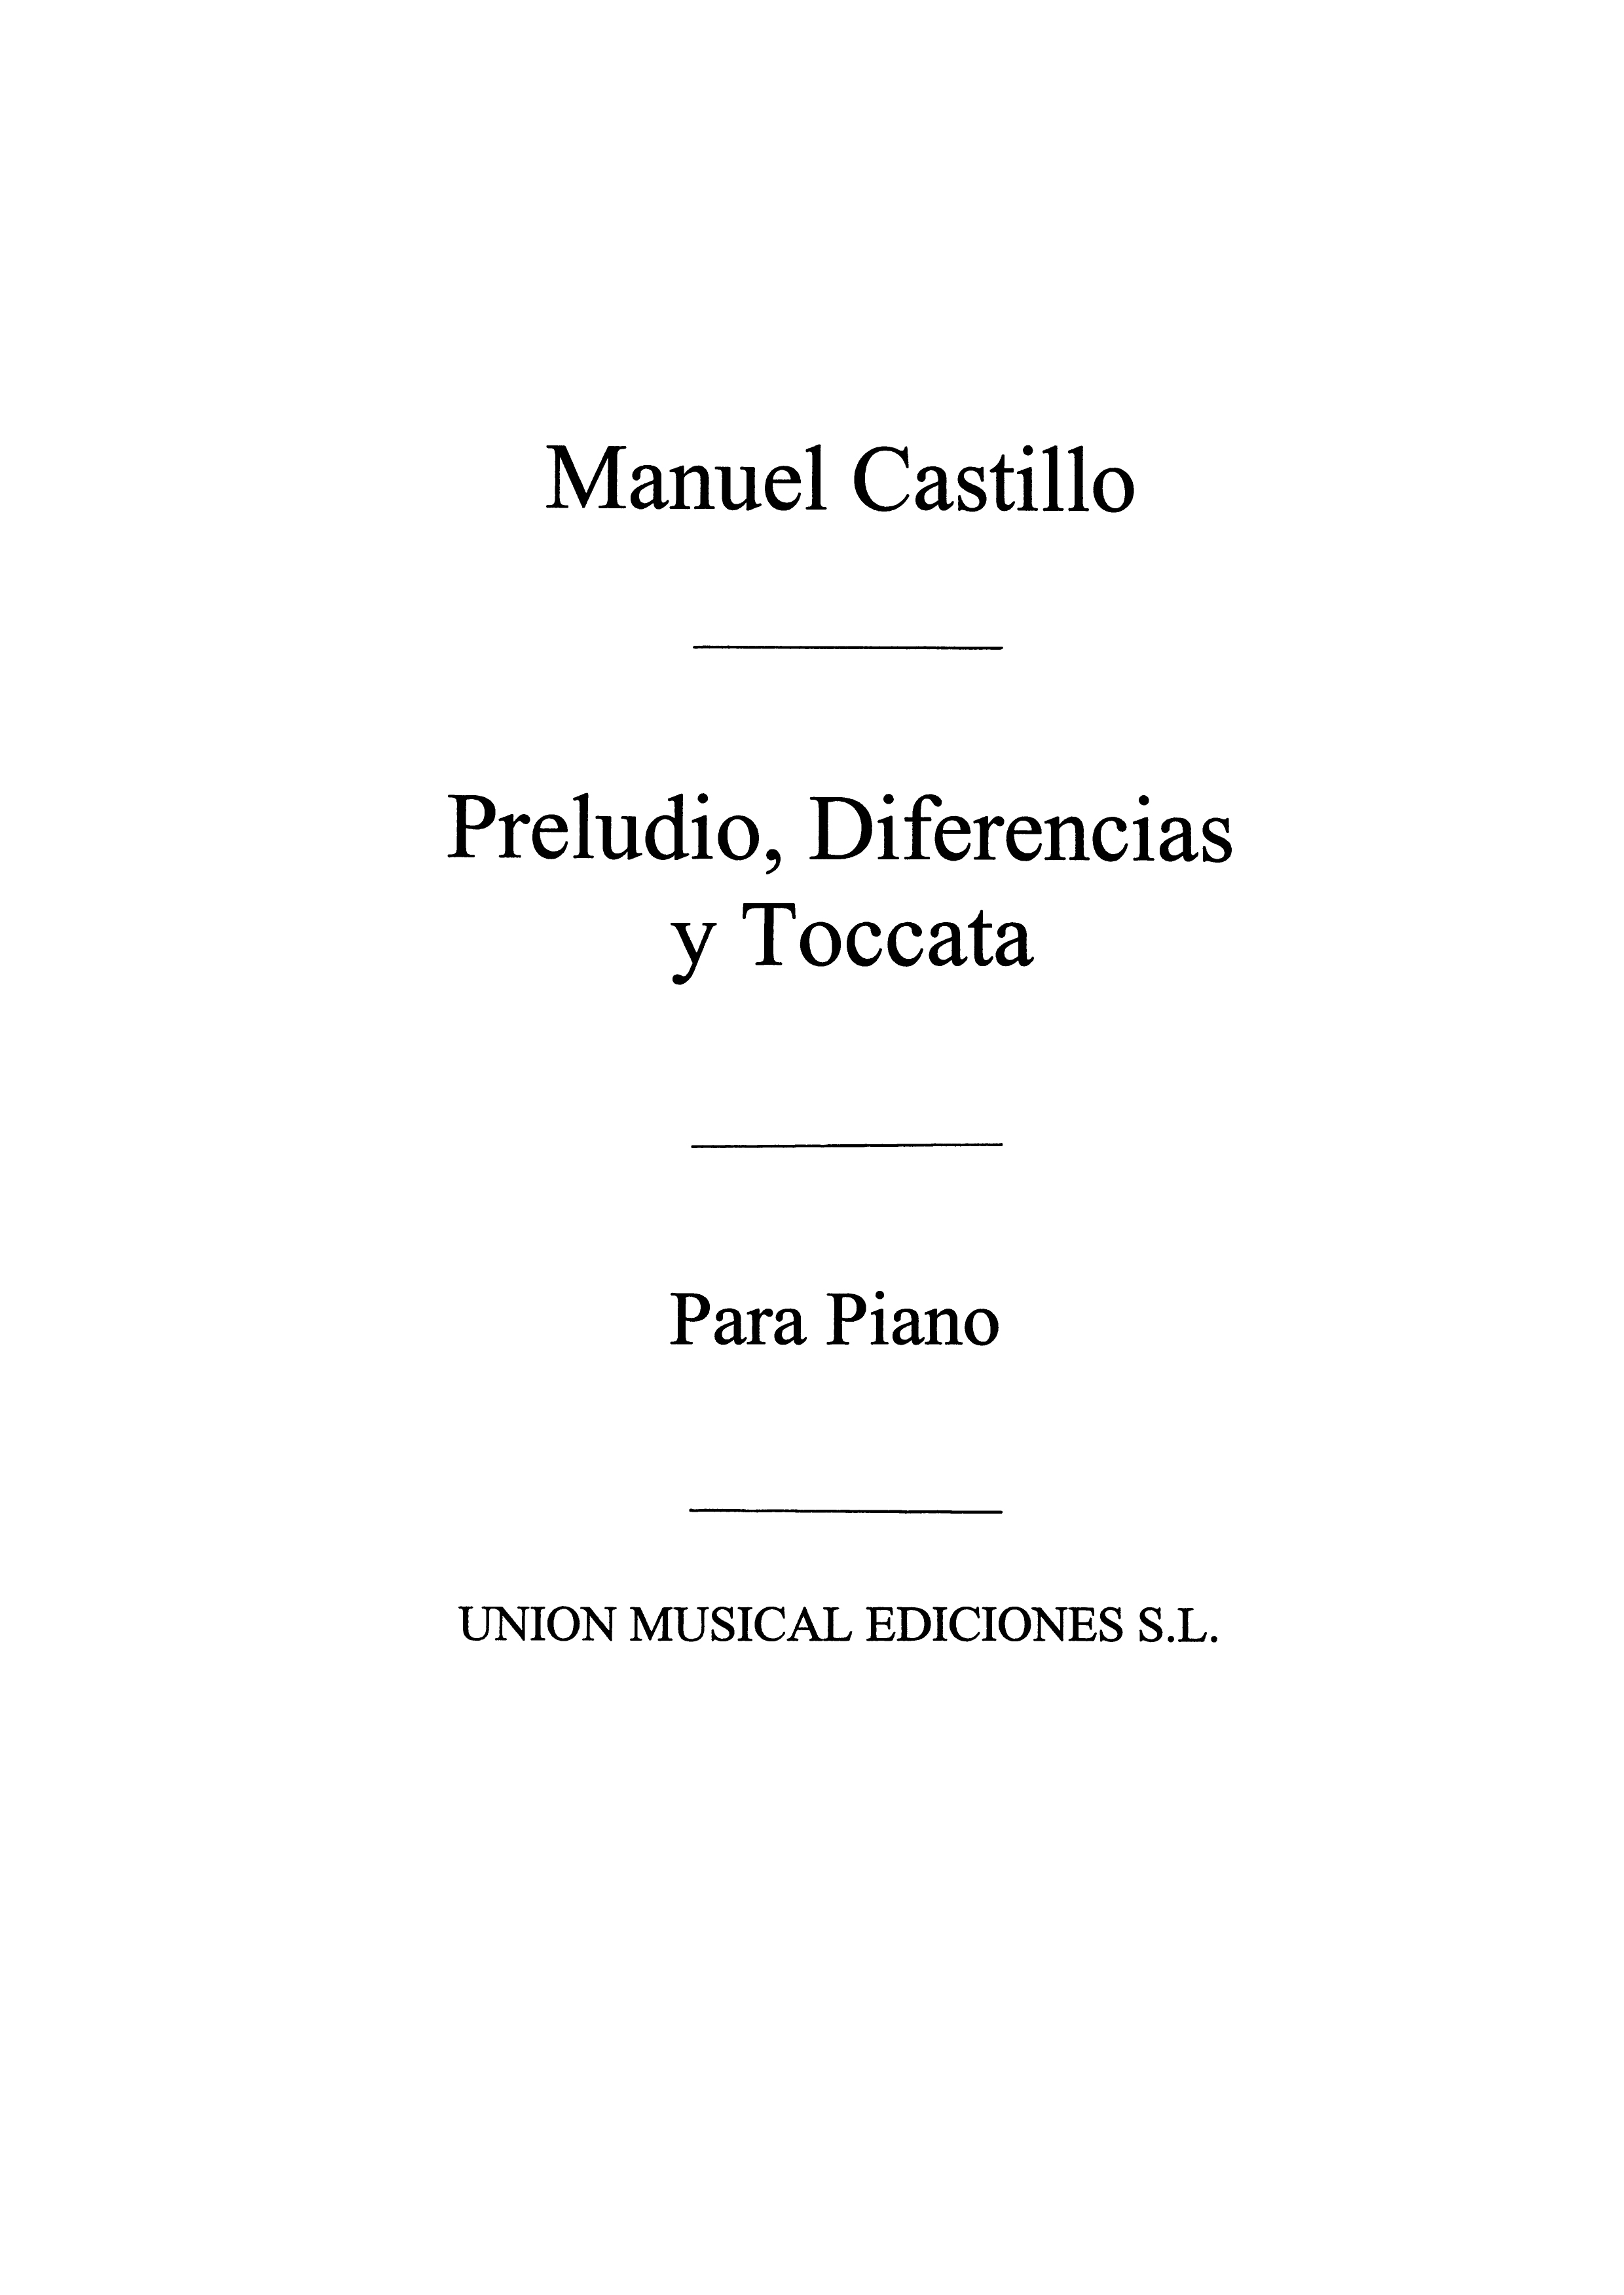 Manuel Del Castillo: Preludio Diferencias For Piano: Piano: Instrumental Work